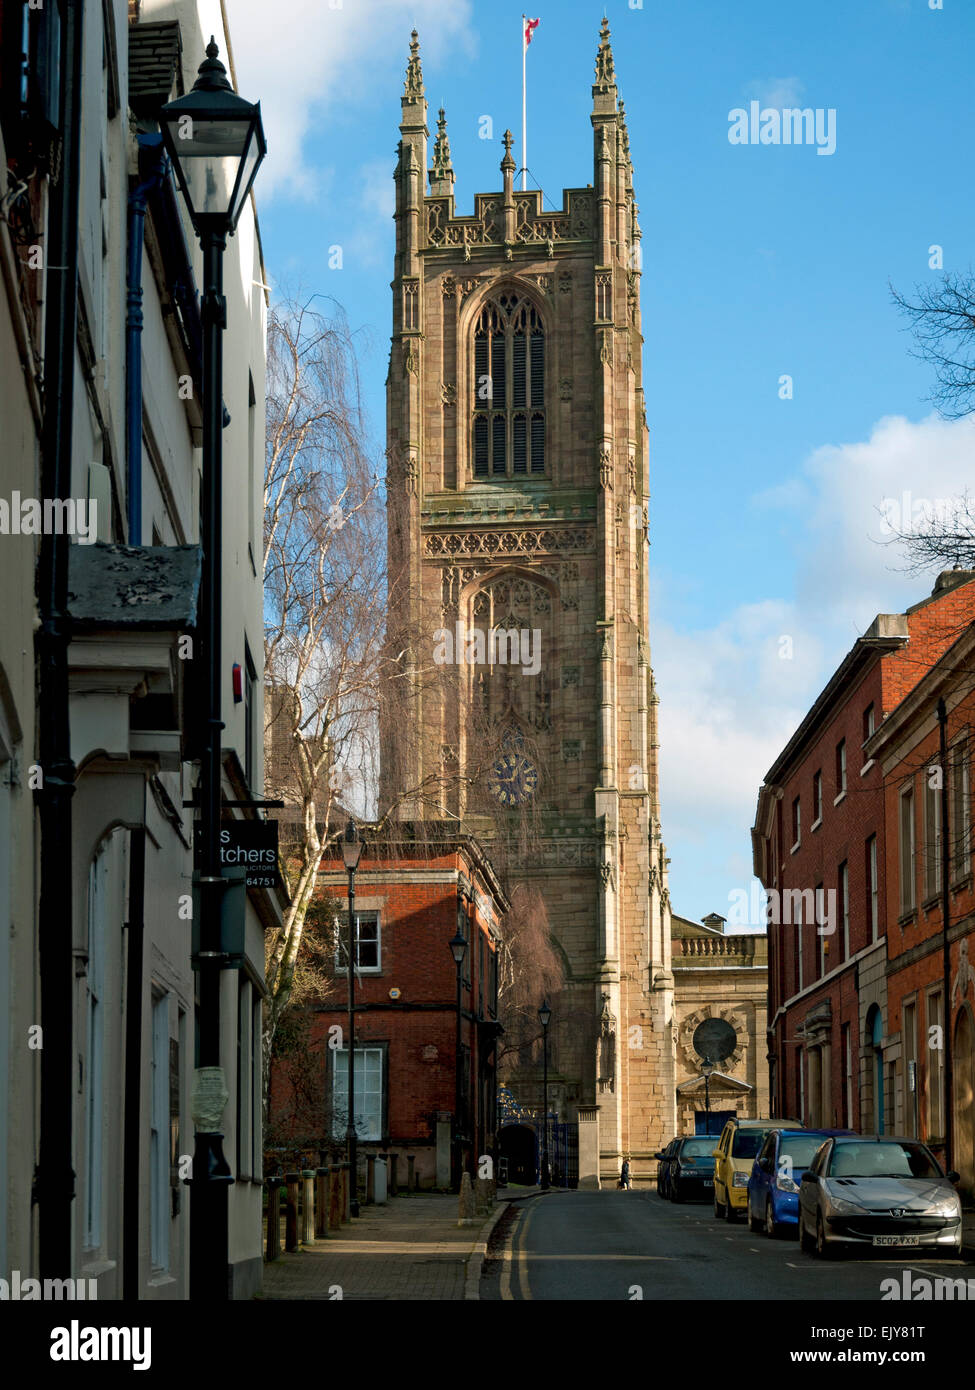 La cathédrale de Derby (la cathédrale de Tous les Saints), de St. Mary's Gate, Derby, England, UK Banque D'Images